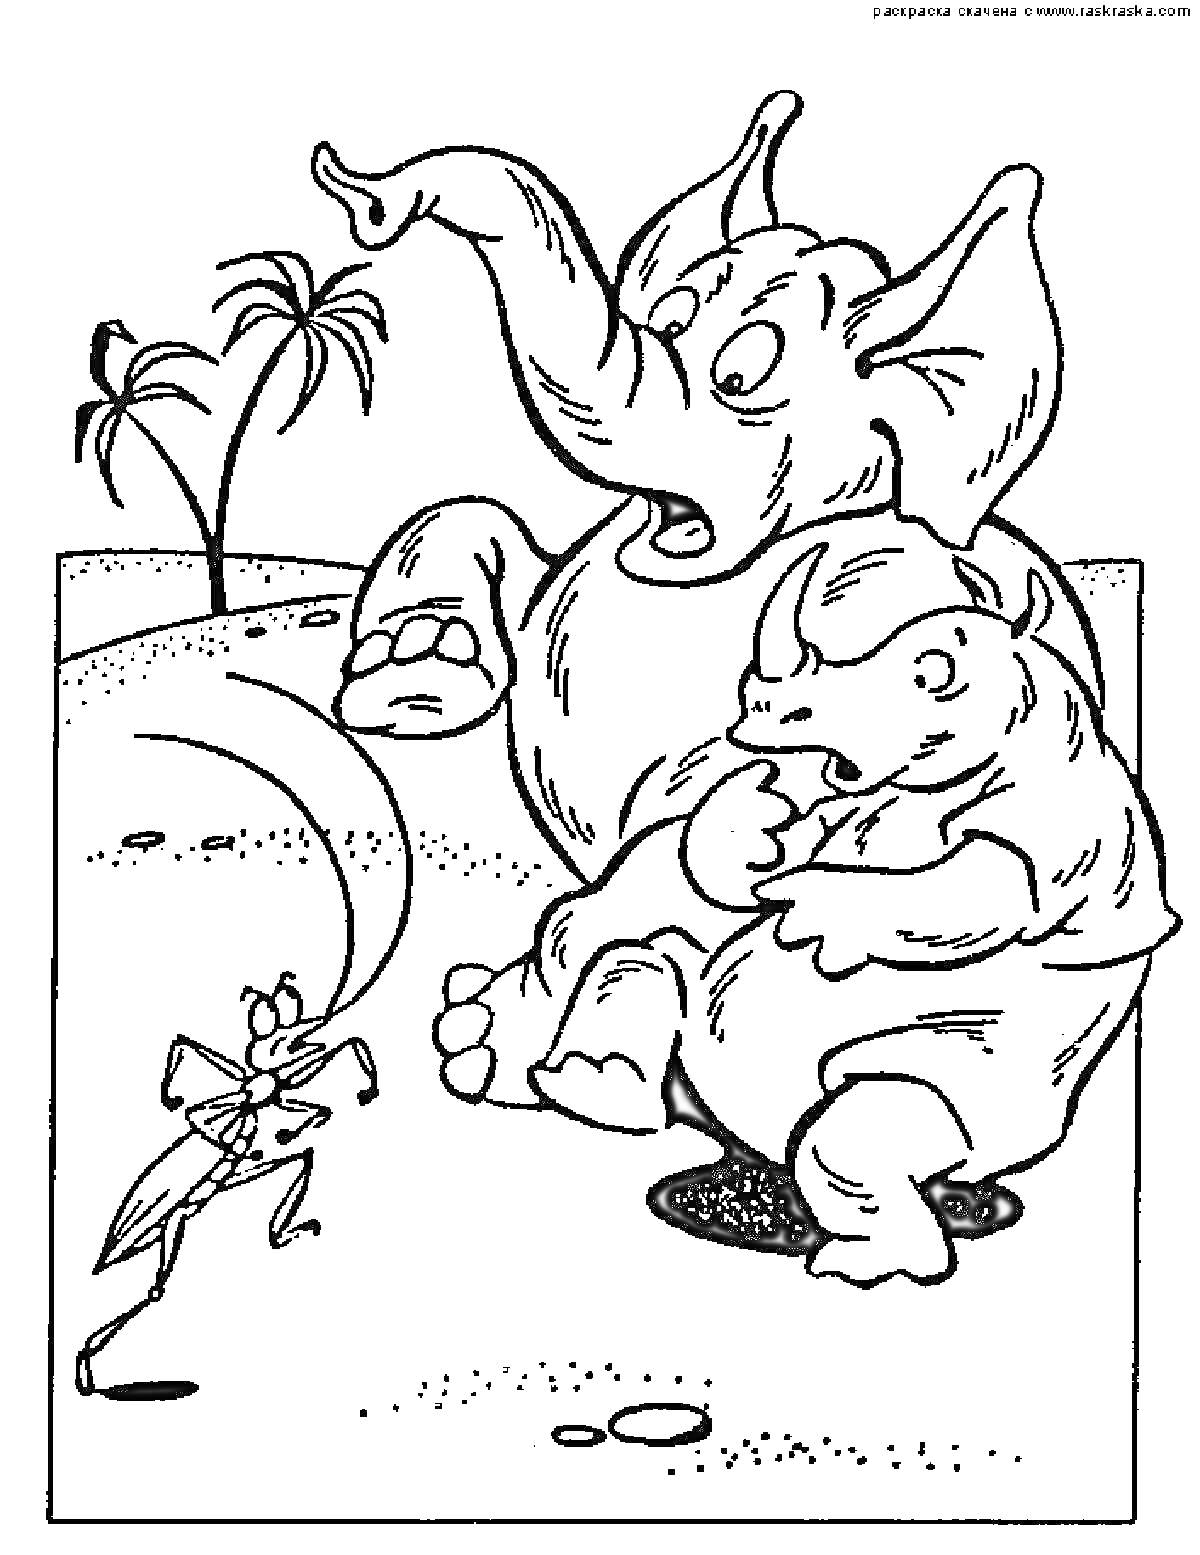  Сцена с тараканом, слоном и носорогом на фоне пальм